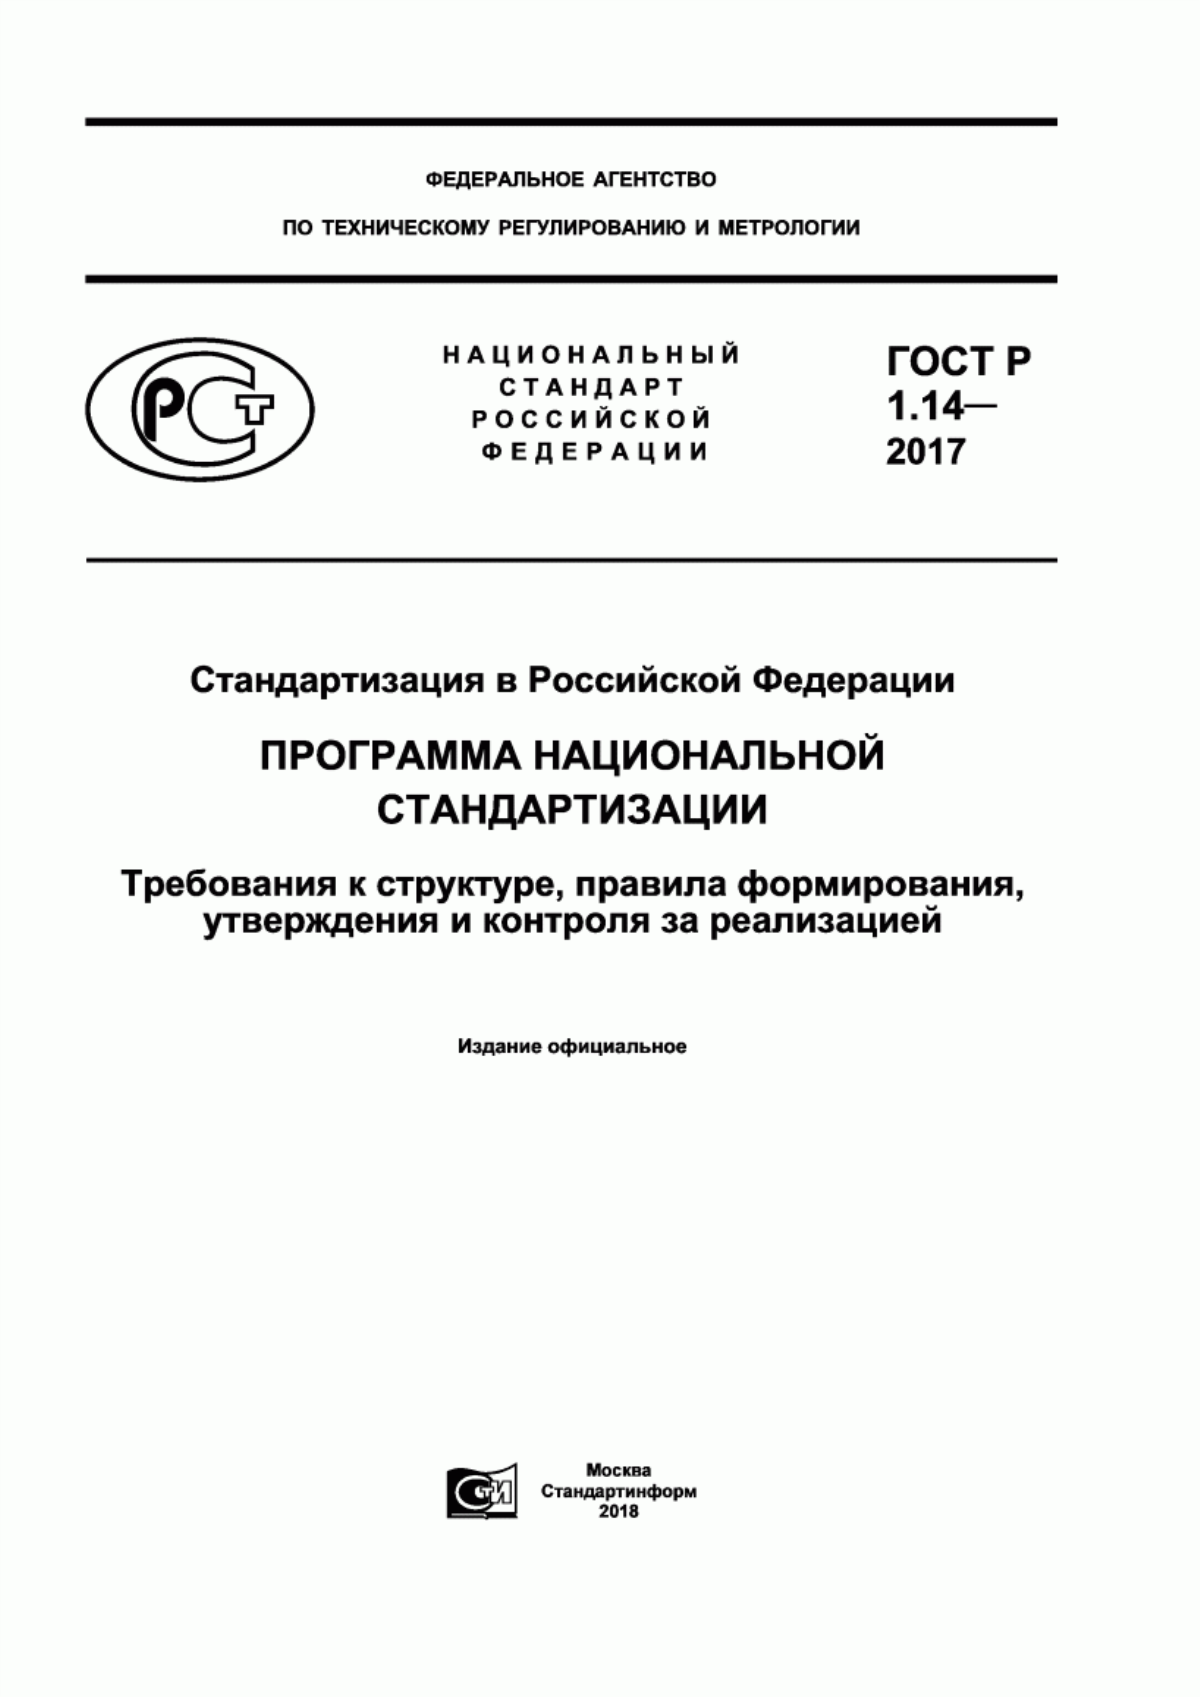 ГОСТ Р 1.14-2017 Стандартизация в Российской Федерации. Программа национальной стандартизации. Требования к структуре, правила формирования, утверждения и контроля за реализацией